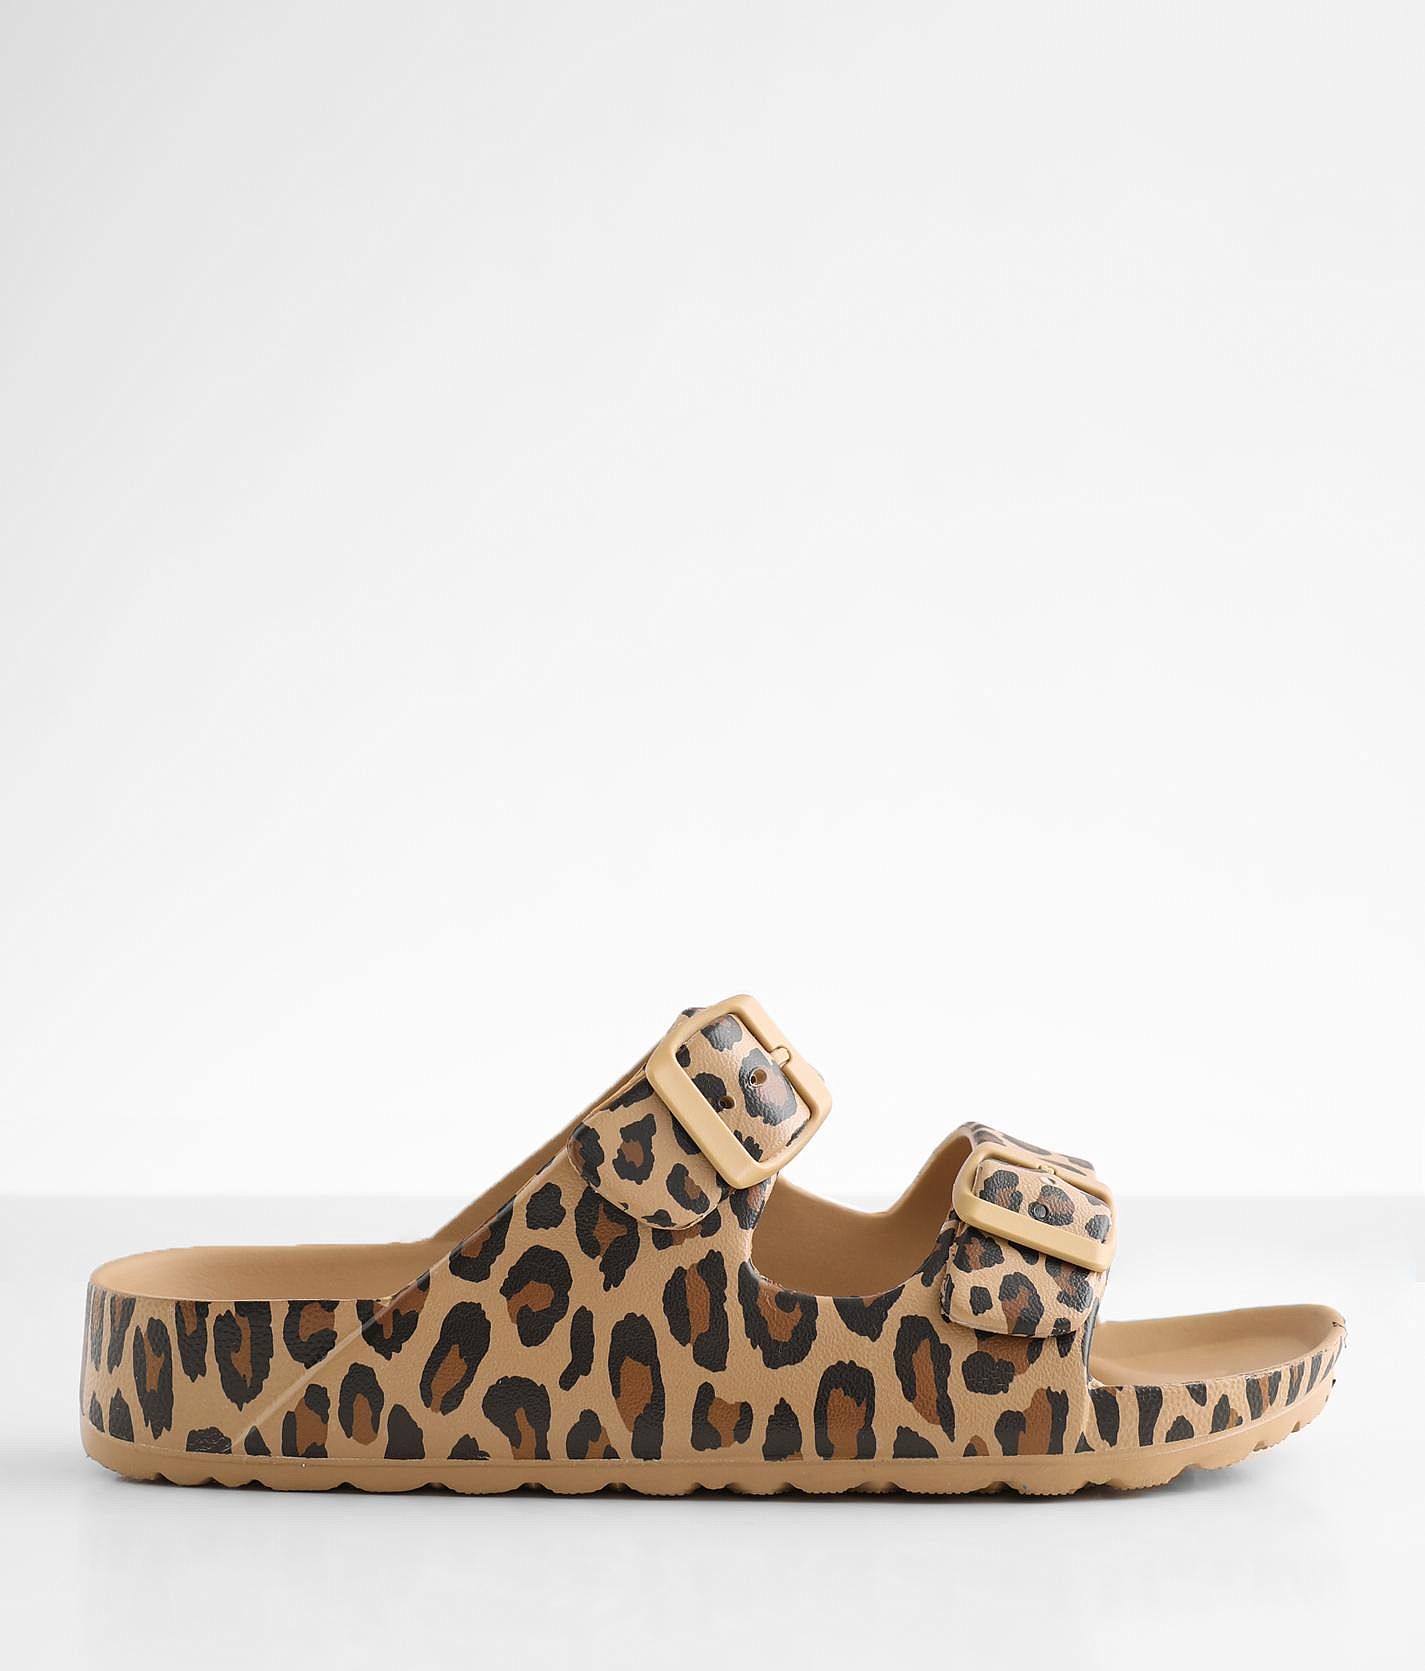 BKE Print Sandal Women's Shoes Tan Leopard | Buckle